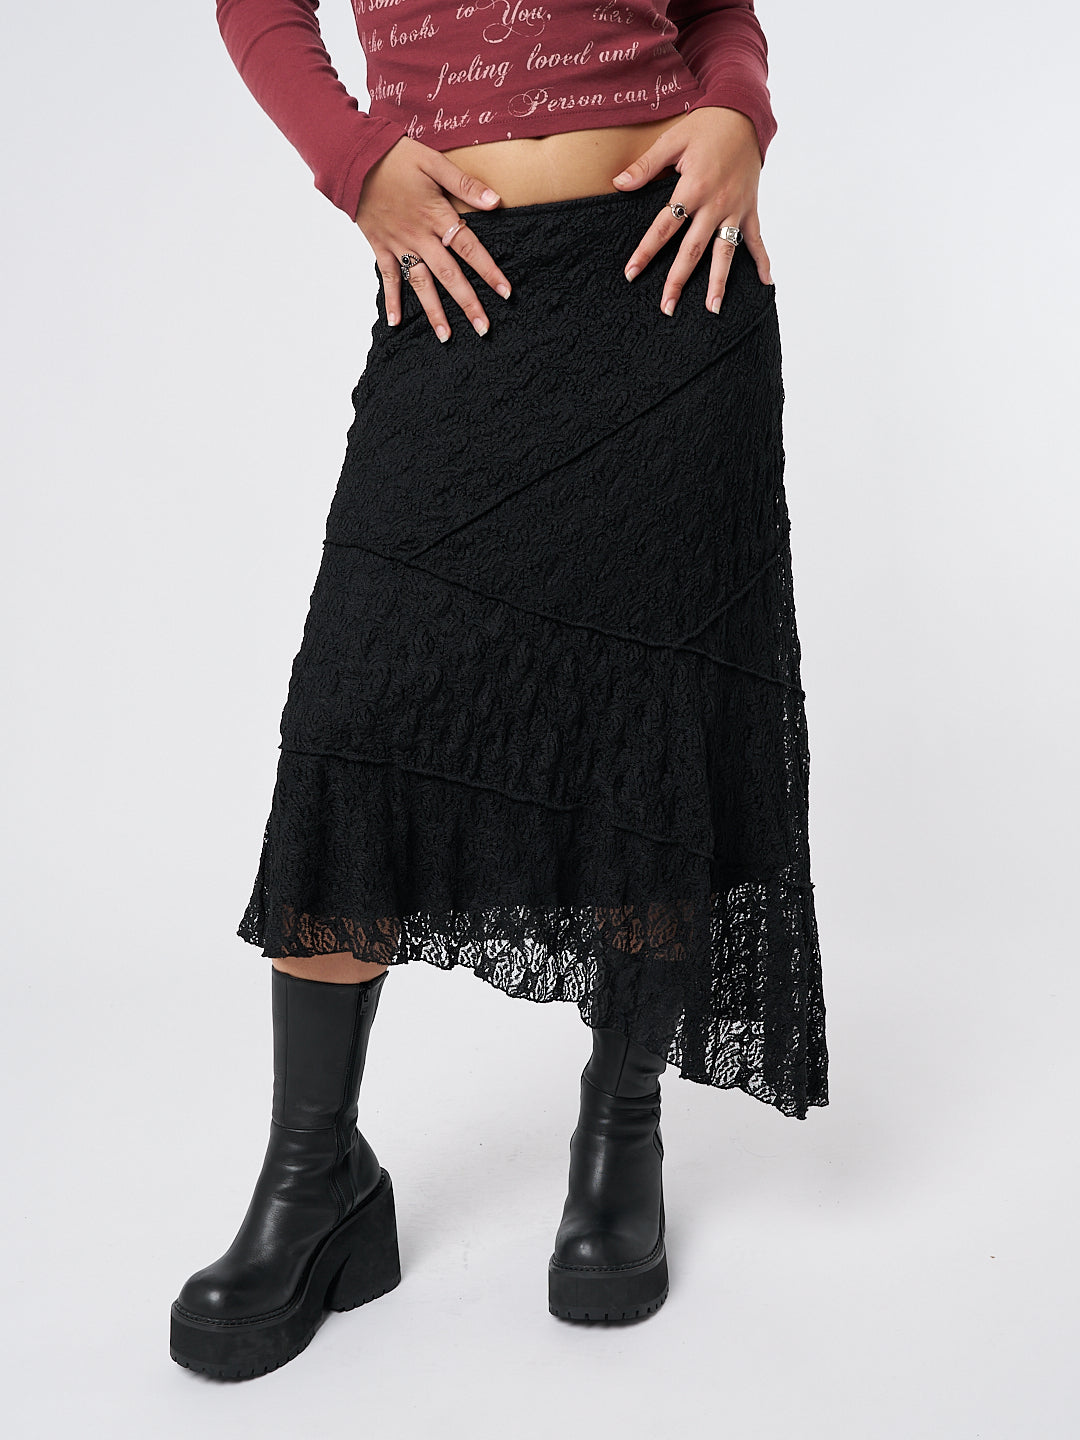 Nolia Black Lace Asymmetric Midi Skirt - Minga EU